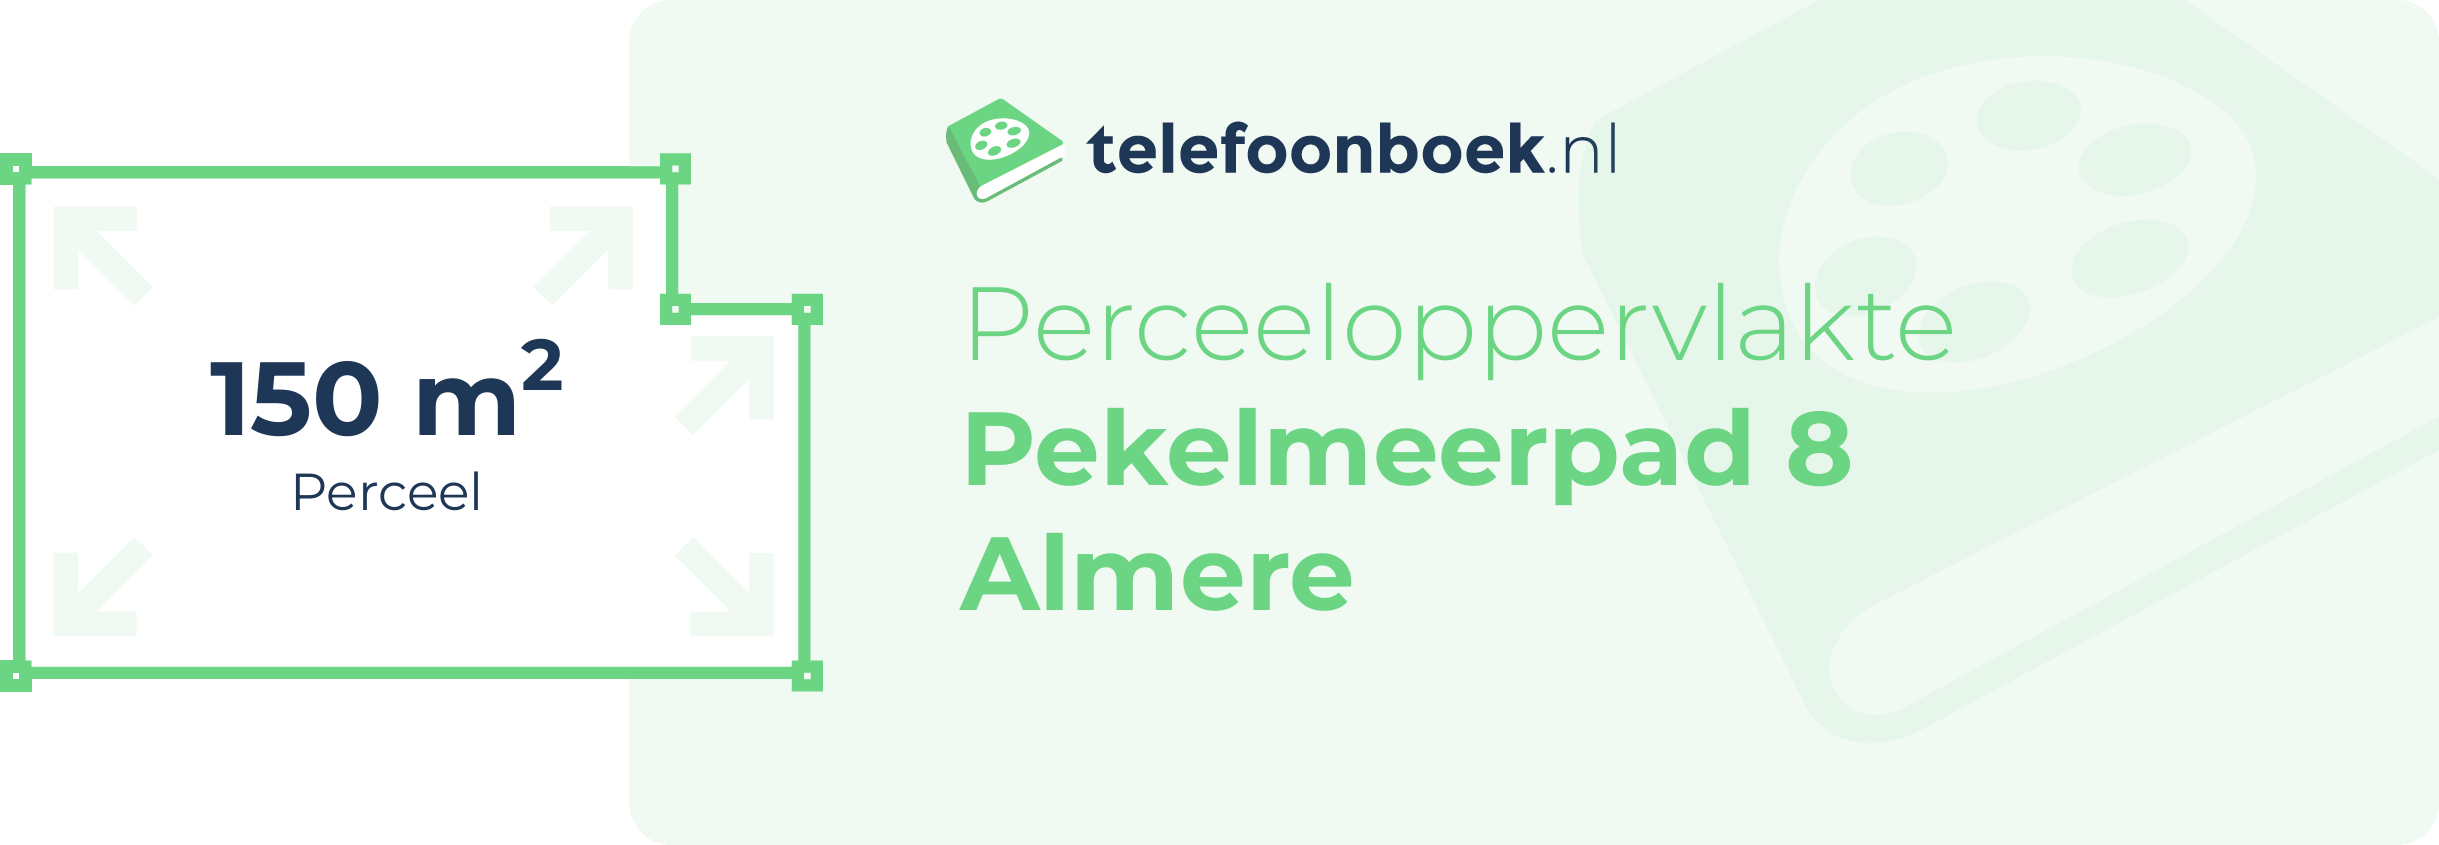 Perceeloppervlakte Pekelmeerpad 8 Almere